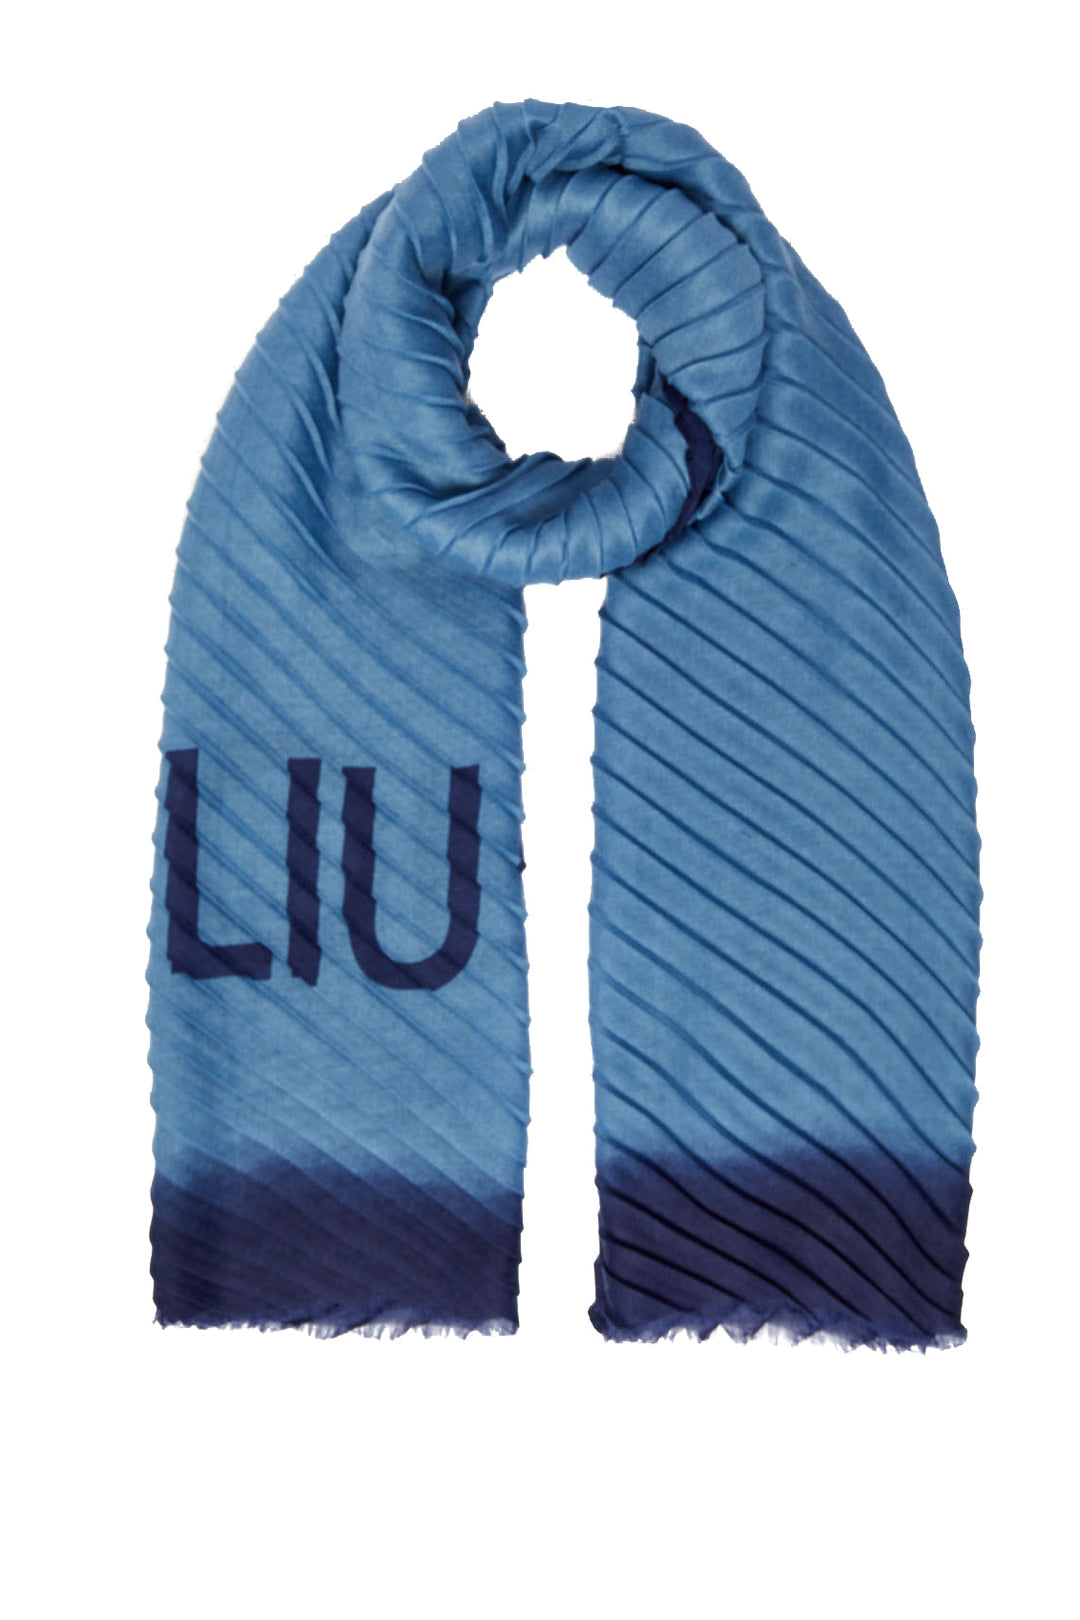 LIU JO Stola azzurro polvere ecosostenibile degradè con logo - Mancinelli 1954